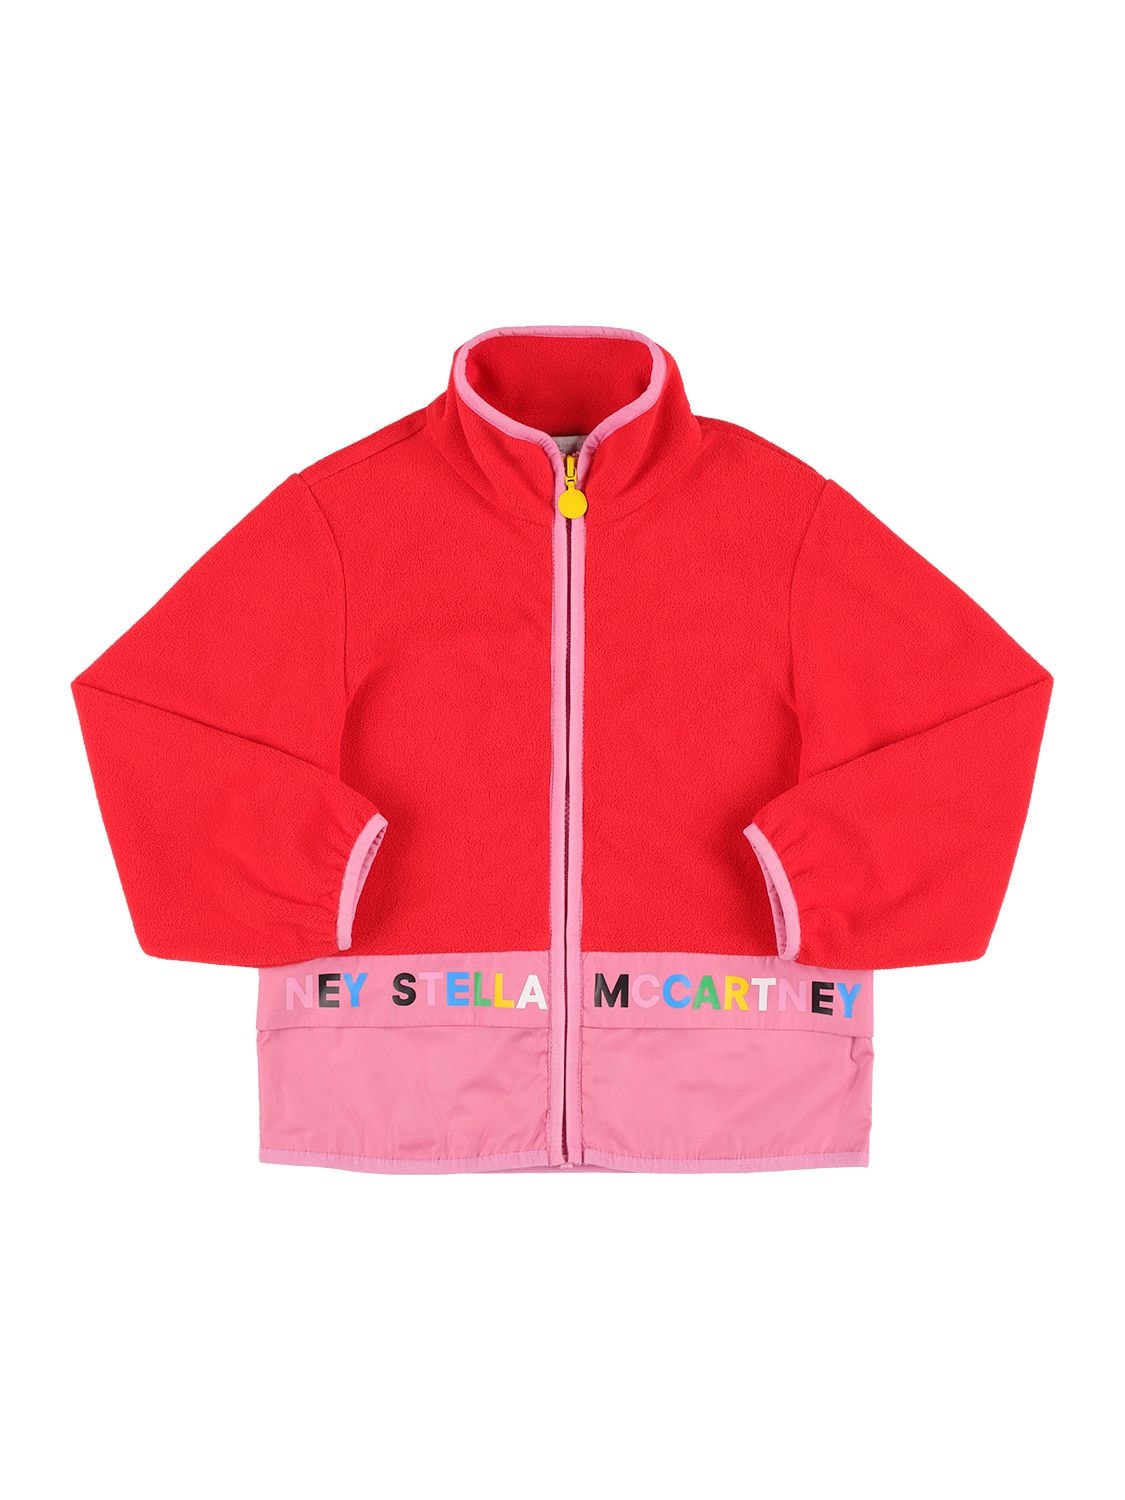 Stella Mccartney Kids' Tech Fleece Zip-up Jacket In Red,pink